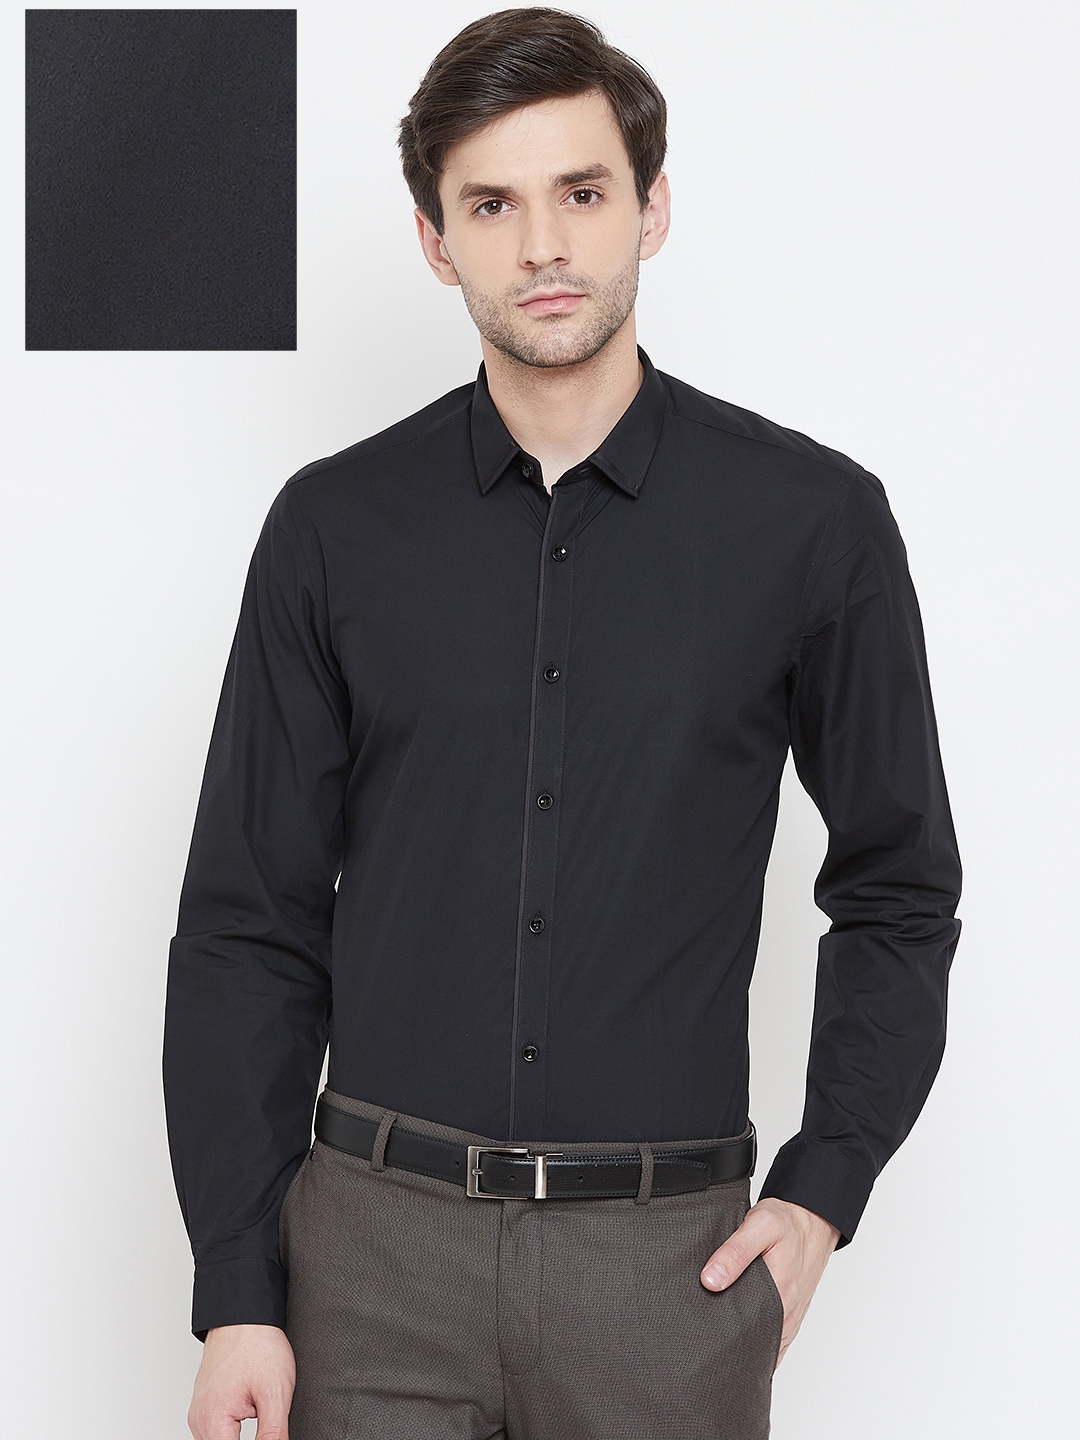 Buy Blackberrys Men Black Slim Fit Solid Formal Shirt - Shirts for Men ...